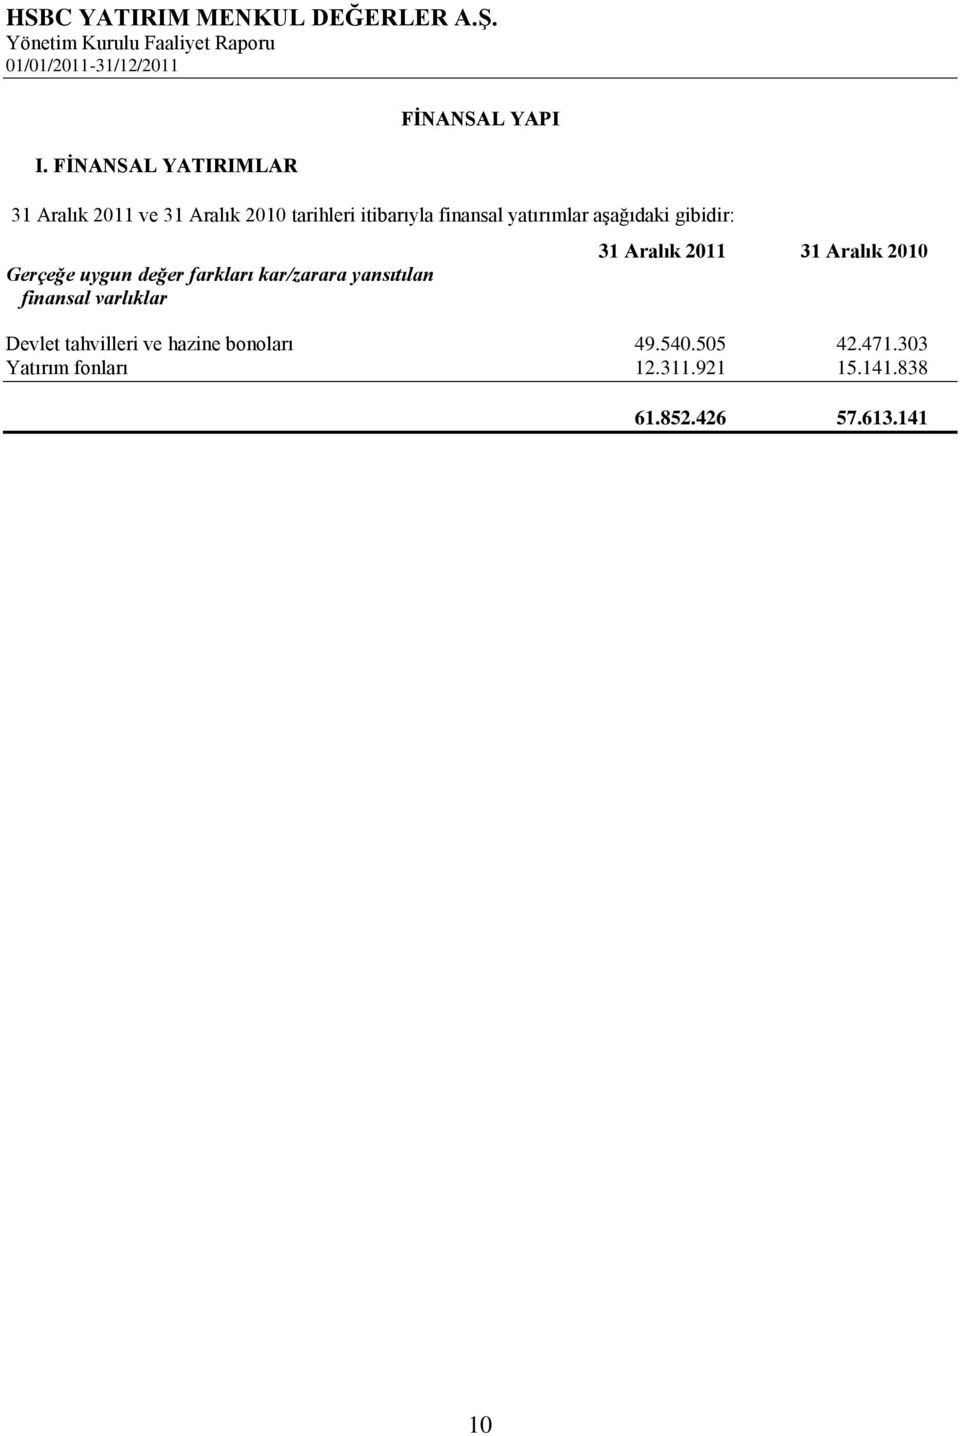 kar/zarara yansıtılan finansal varlıklar 31 Aralık 2011 31 Aralık 2010 Devlet